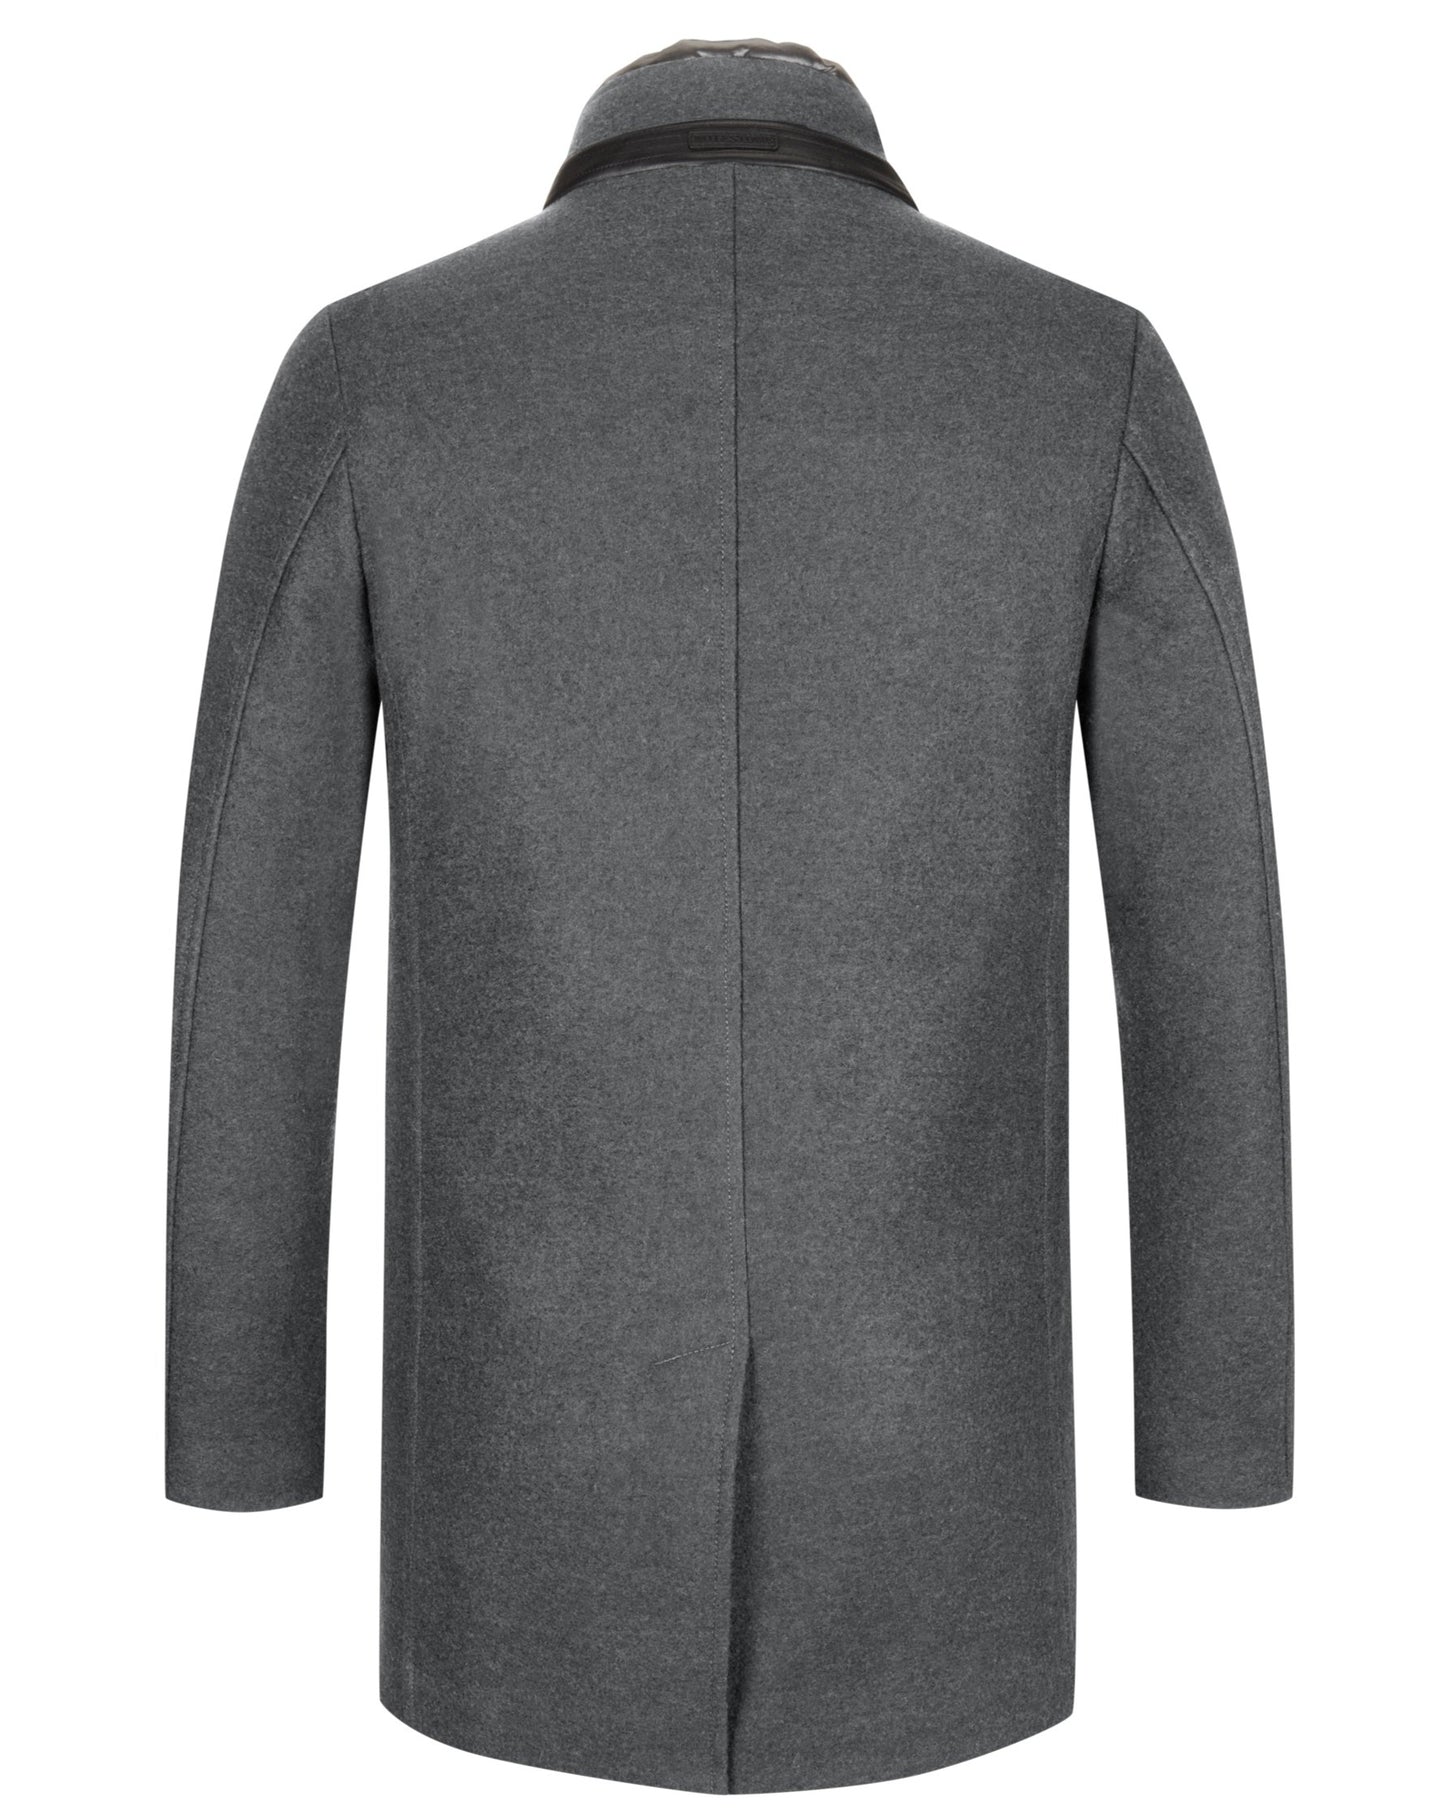 MILESTONE Jacket Wool Blended, Grey